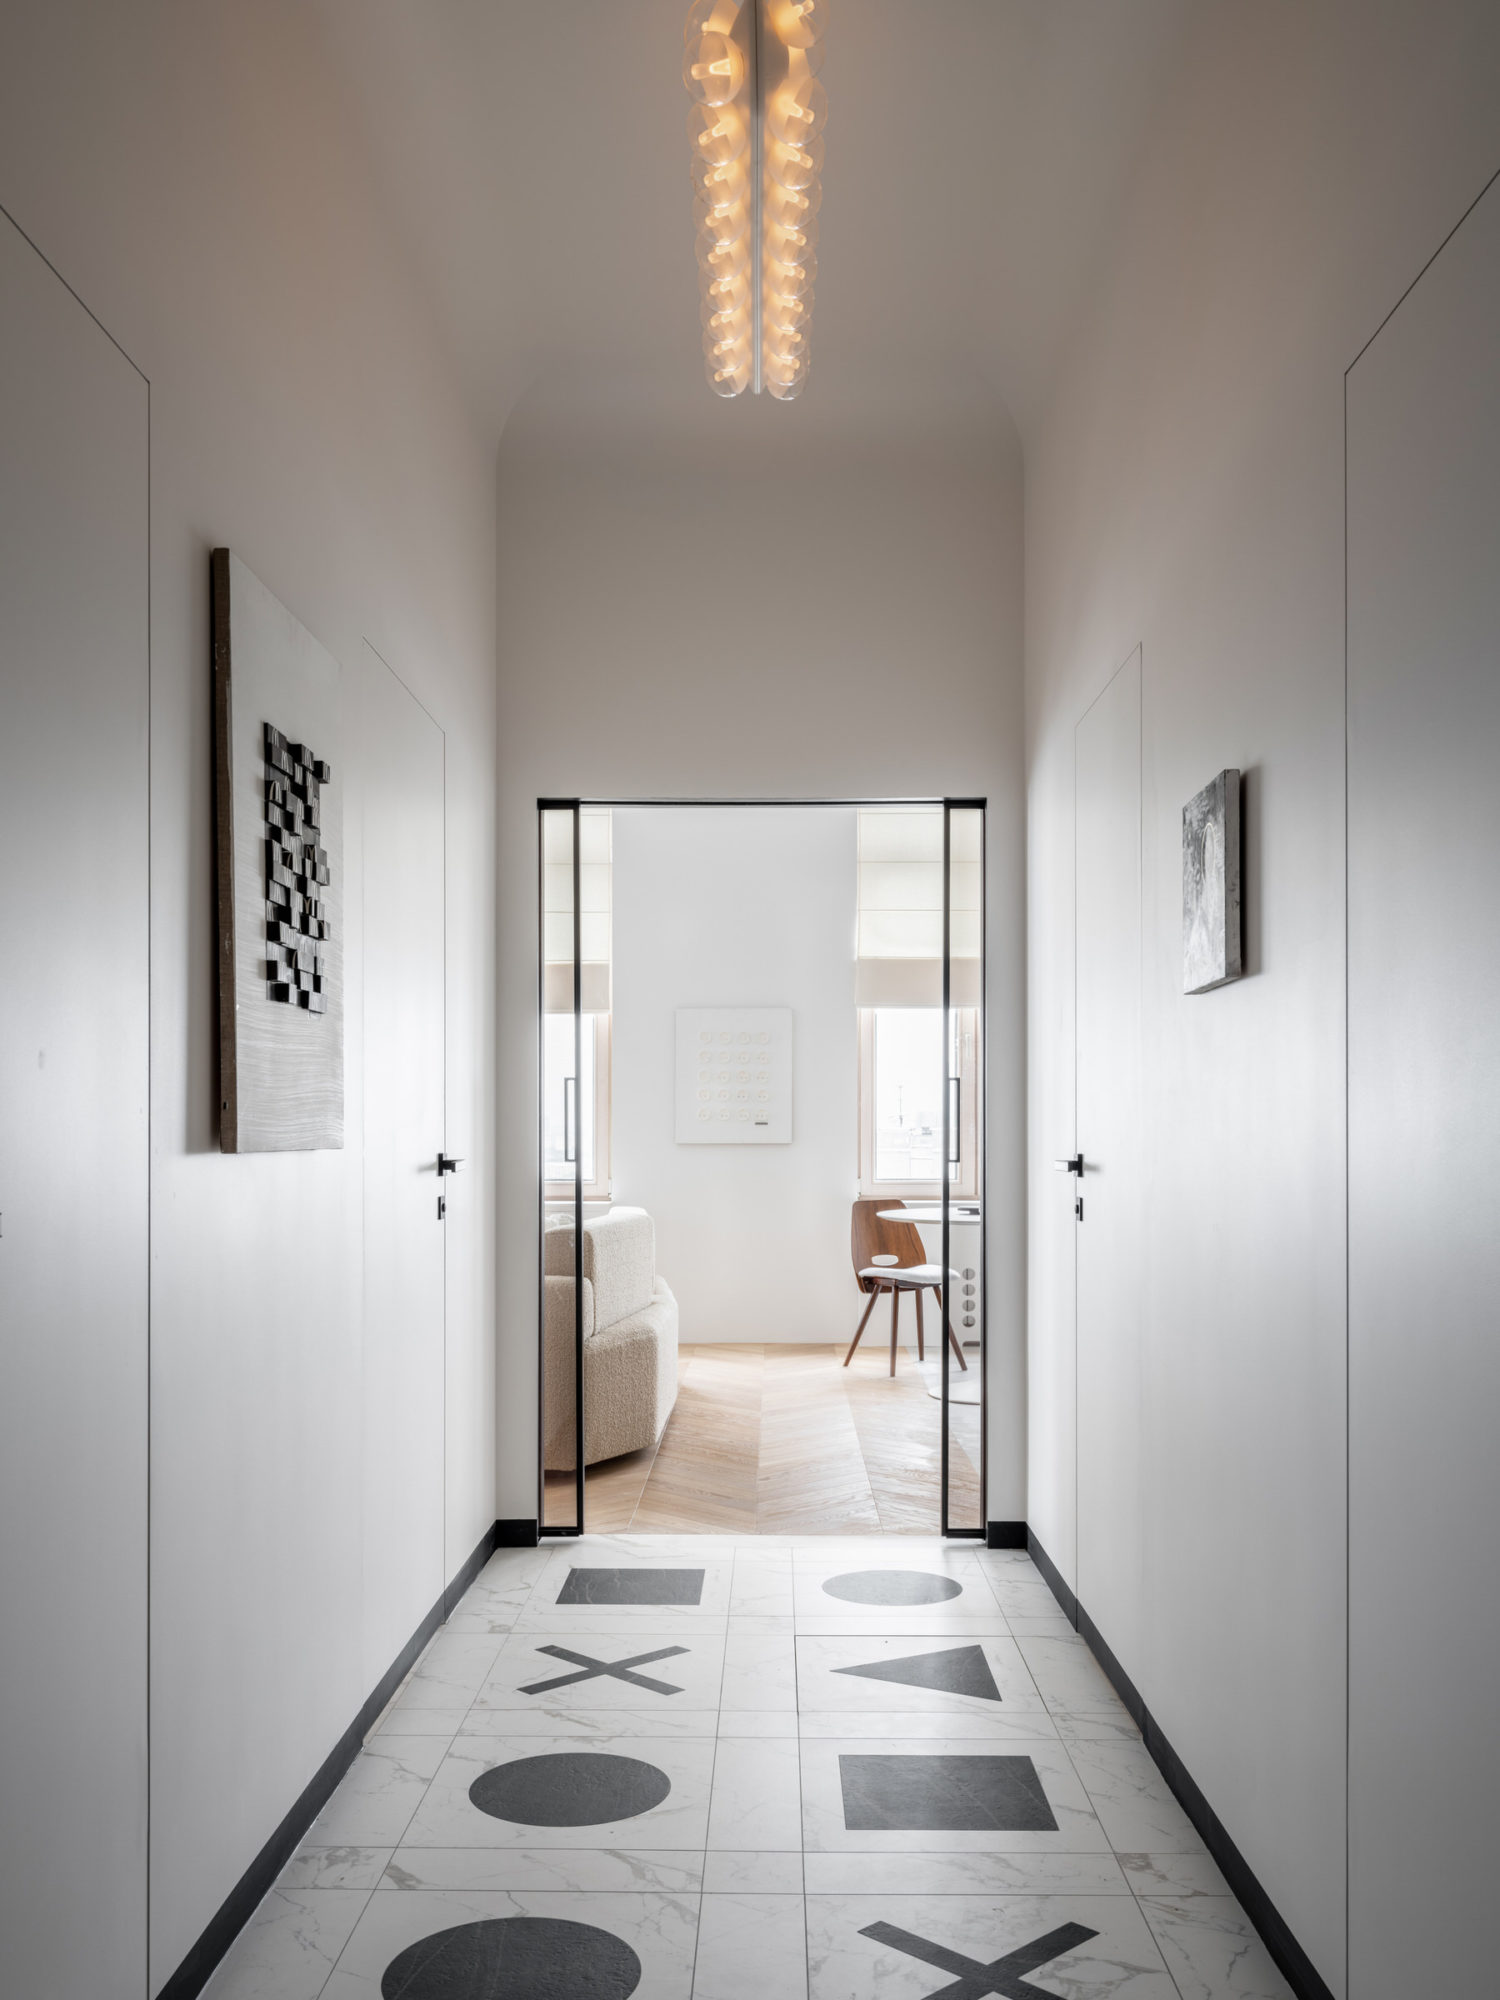 Chỉ dùng 2 màu đen - trắng nhưng căn hộ nhỏ 74 mét vuông sở hữu vẻ đẹp độc đáo, đầy nghệ thuật - Ảnh 3.